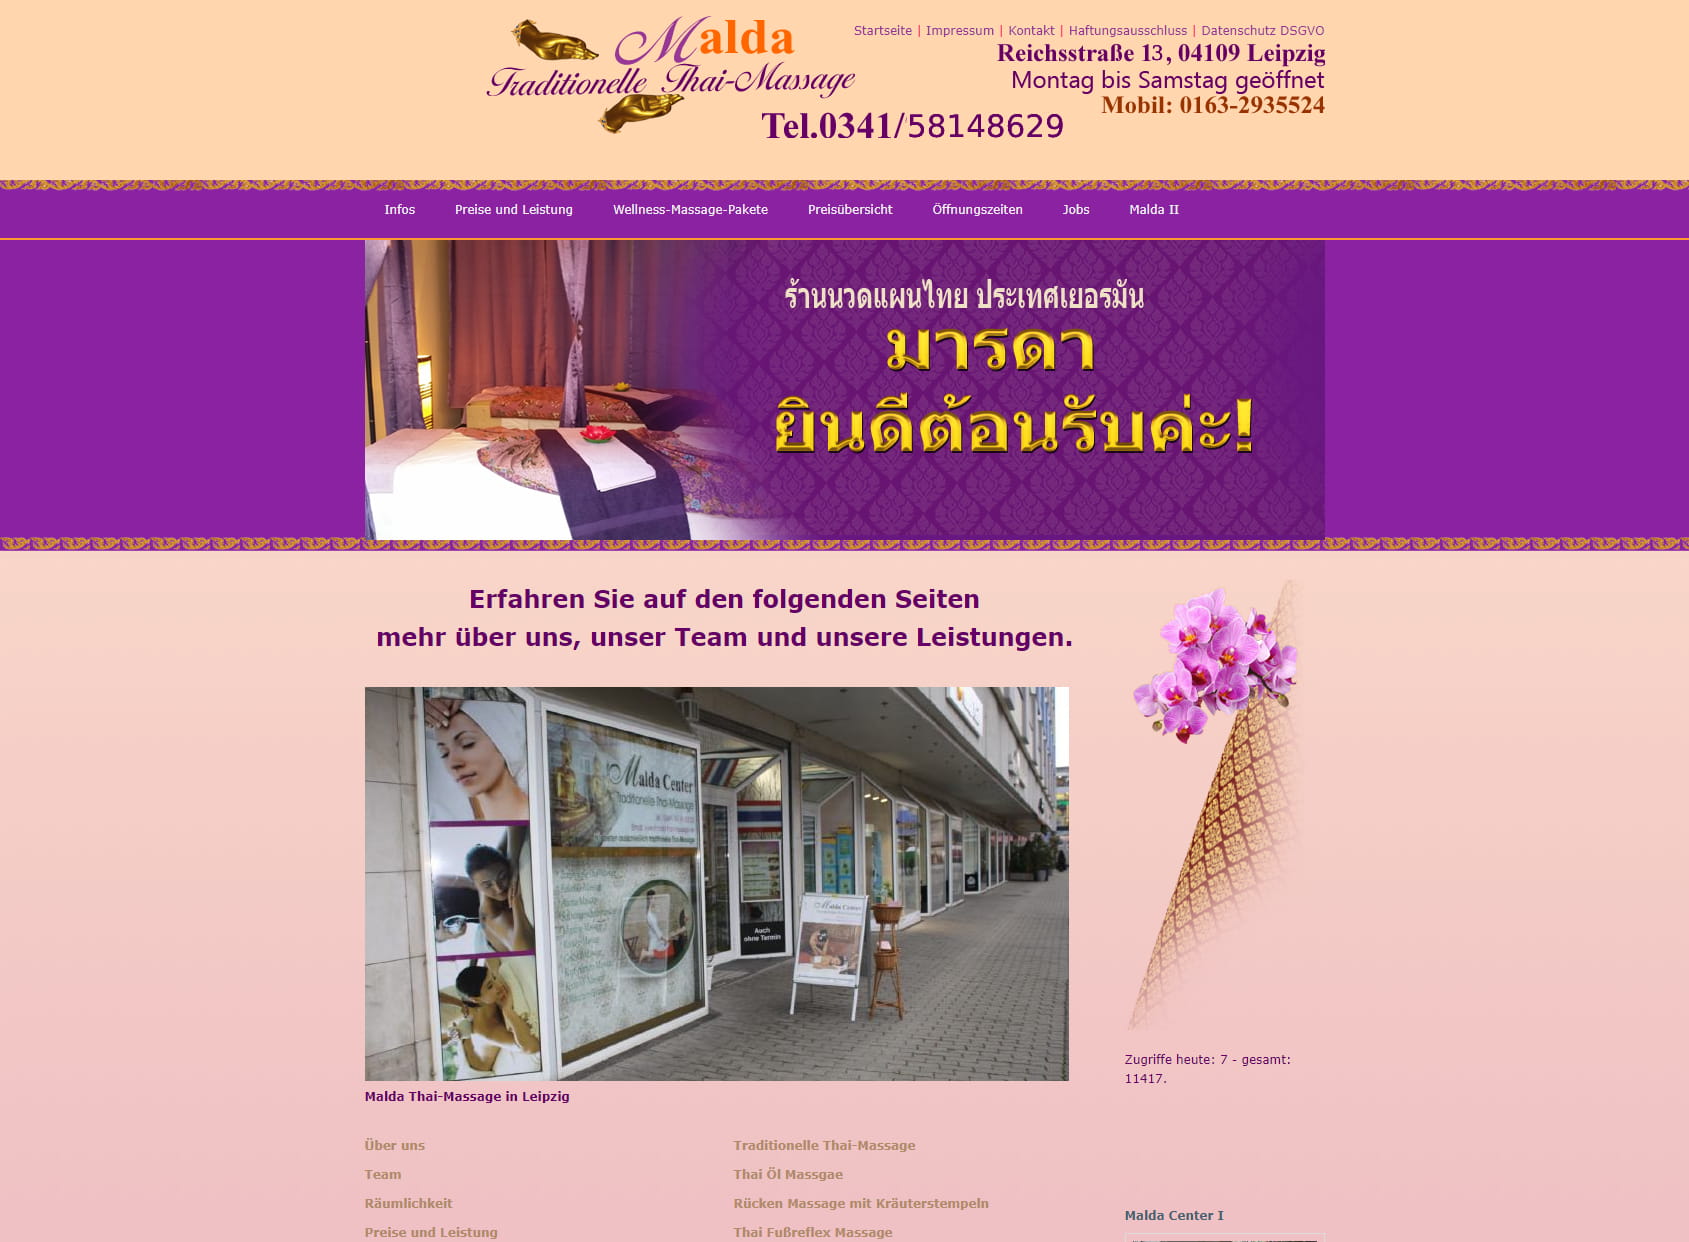 Malda Center for Thai massage